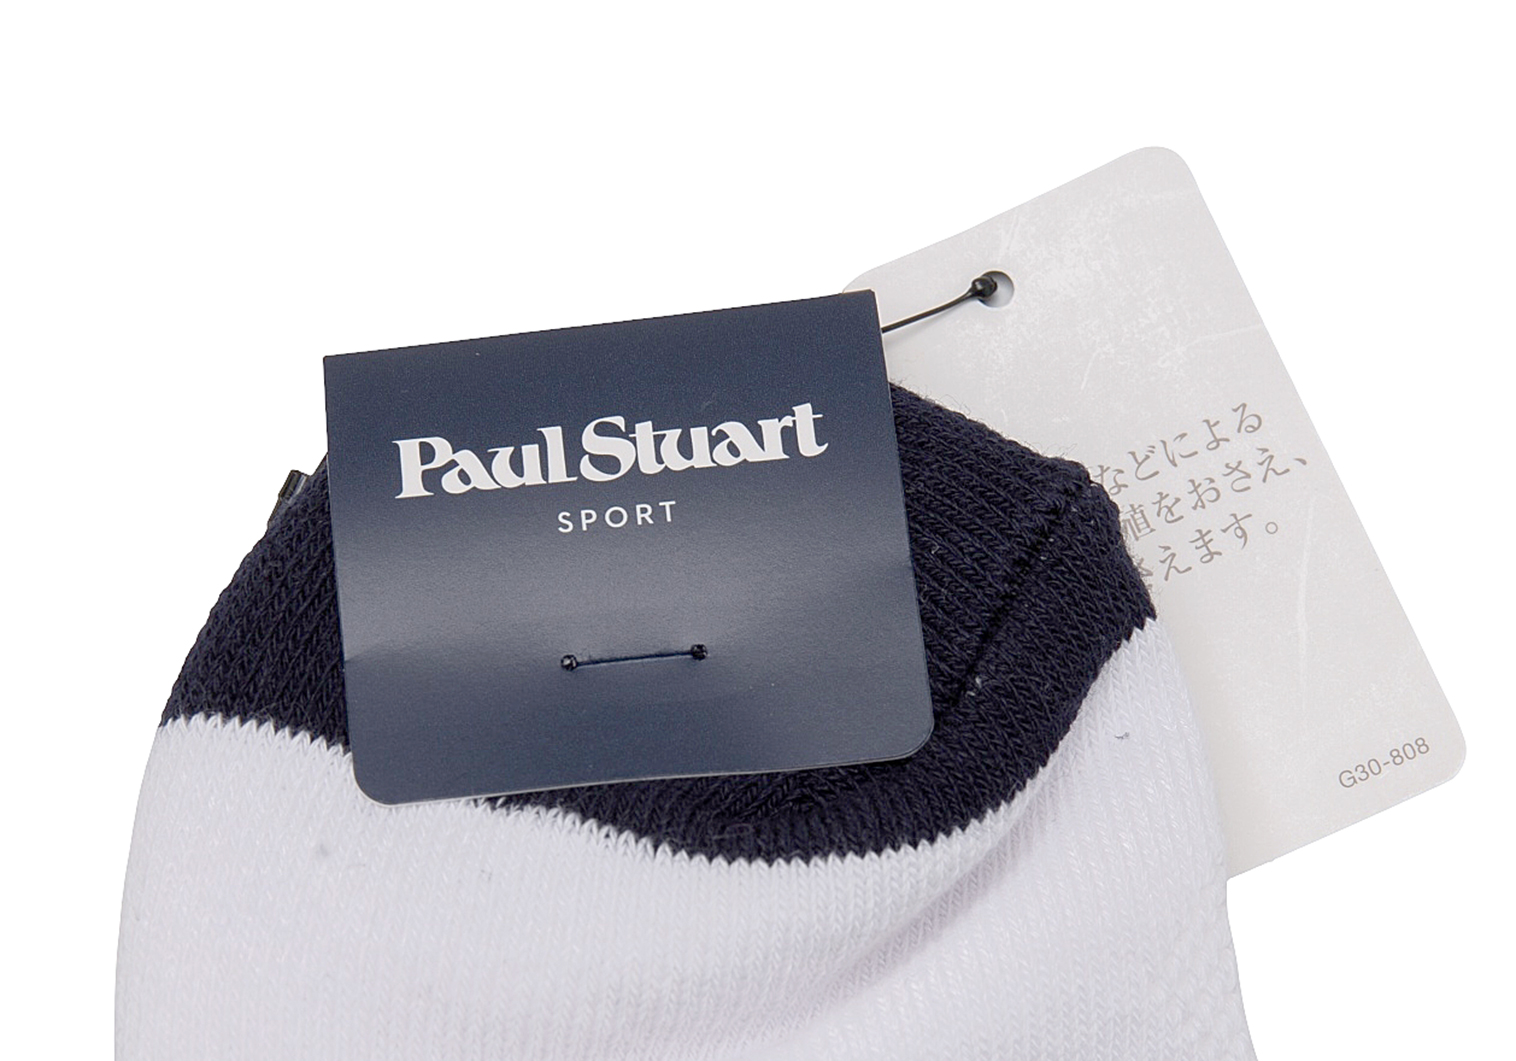 Paul Stuart sport